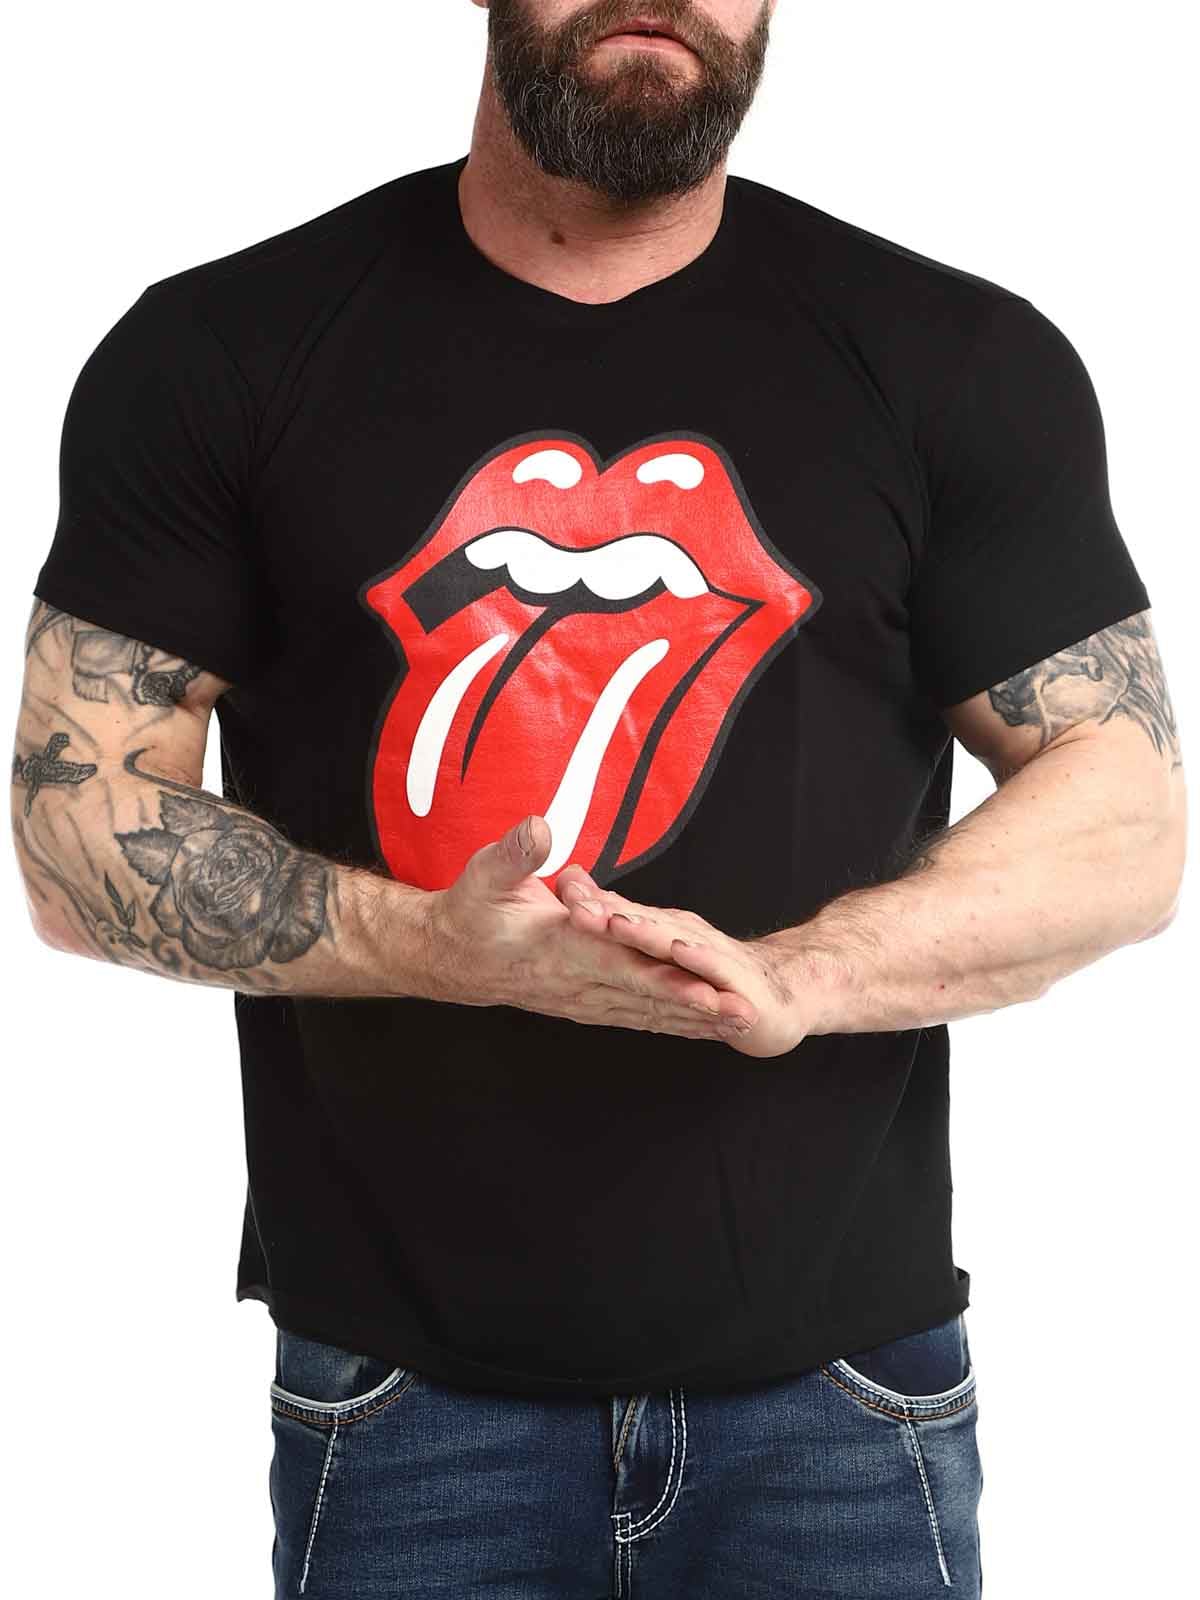 Rolling Stones Tongue Tshirt_3.jpg